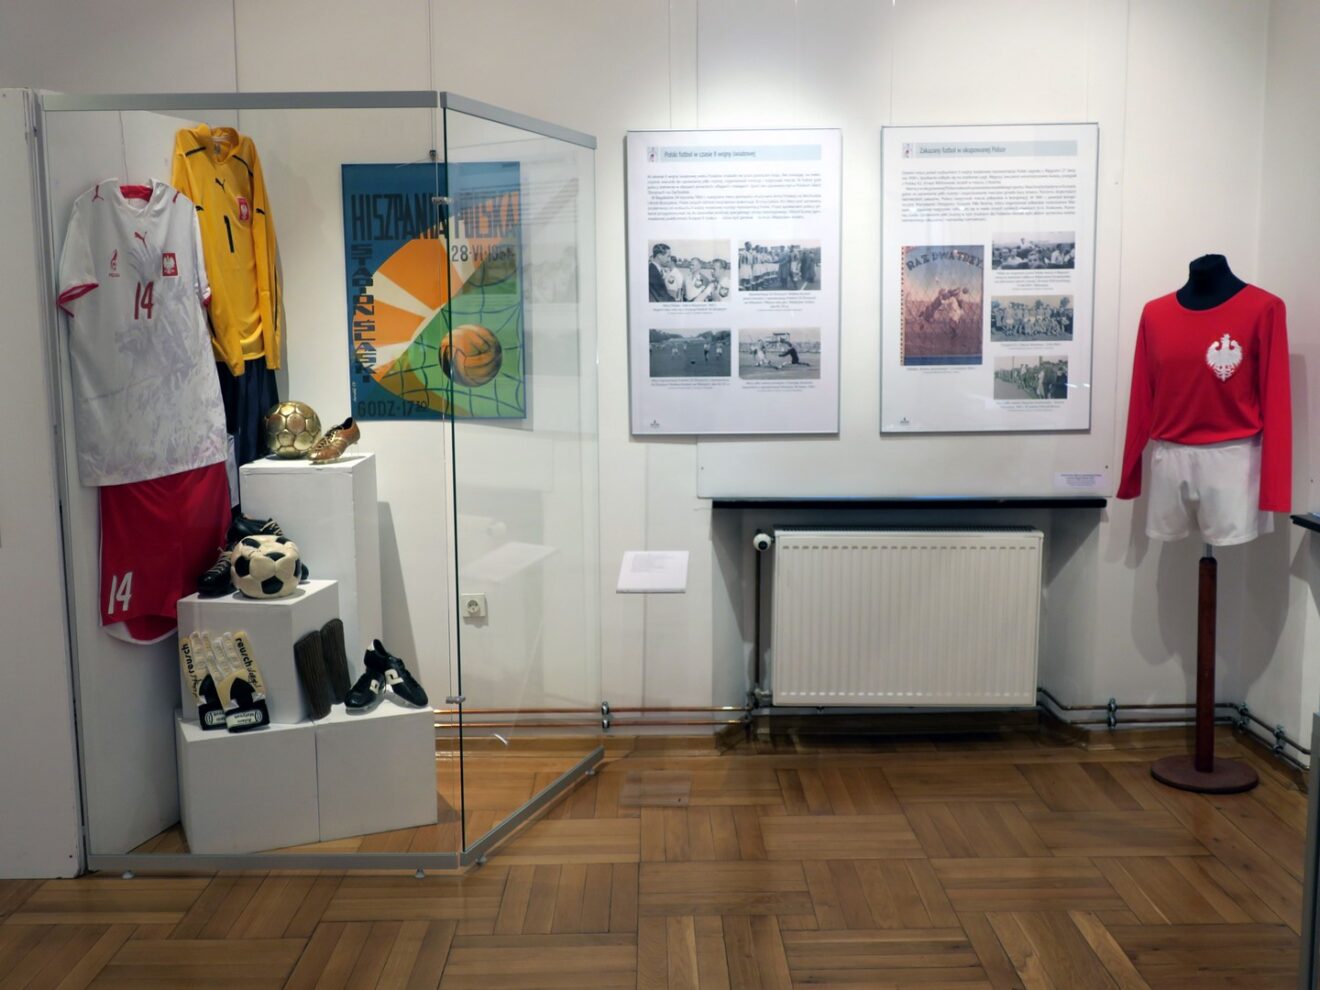 Fragment wystawy prezentujący historyczne akcesoria piłkarskie: kuszuki, rękawice, piłki i buty. Obok fotoramy ze zdjęciami i informacjami.